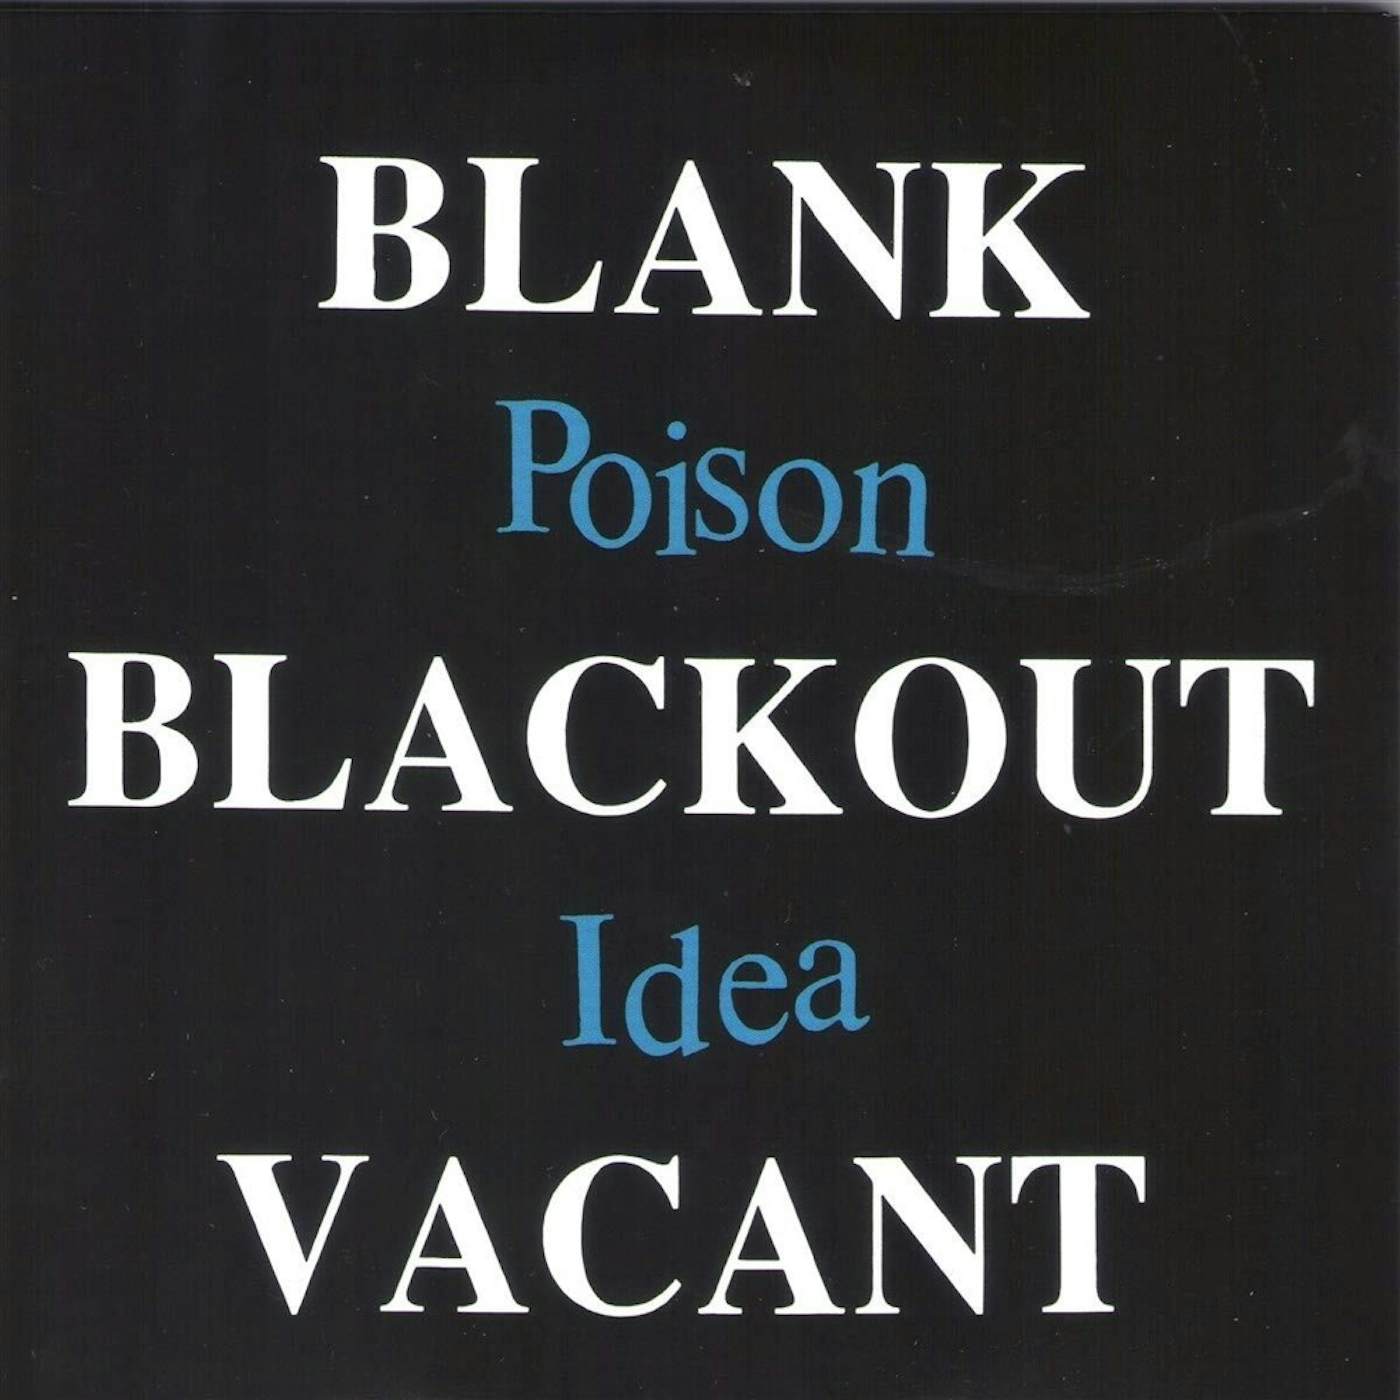 Poison Idea BLANK BLACKOUT VACANT Vinyl Record